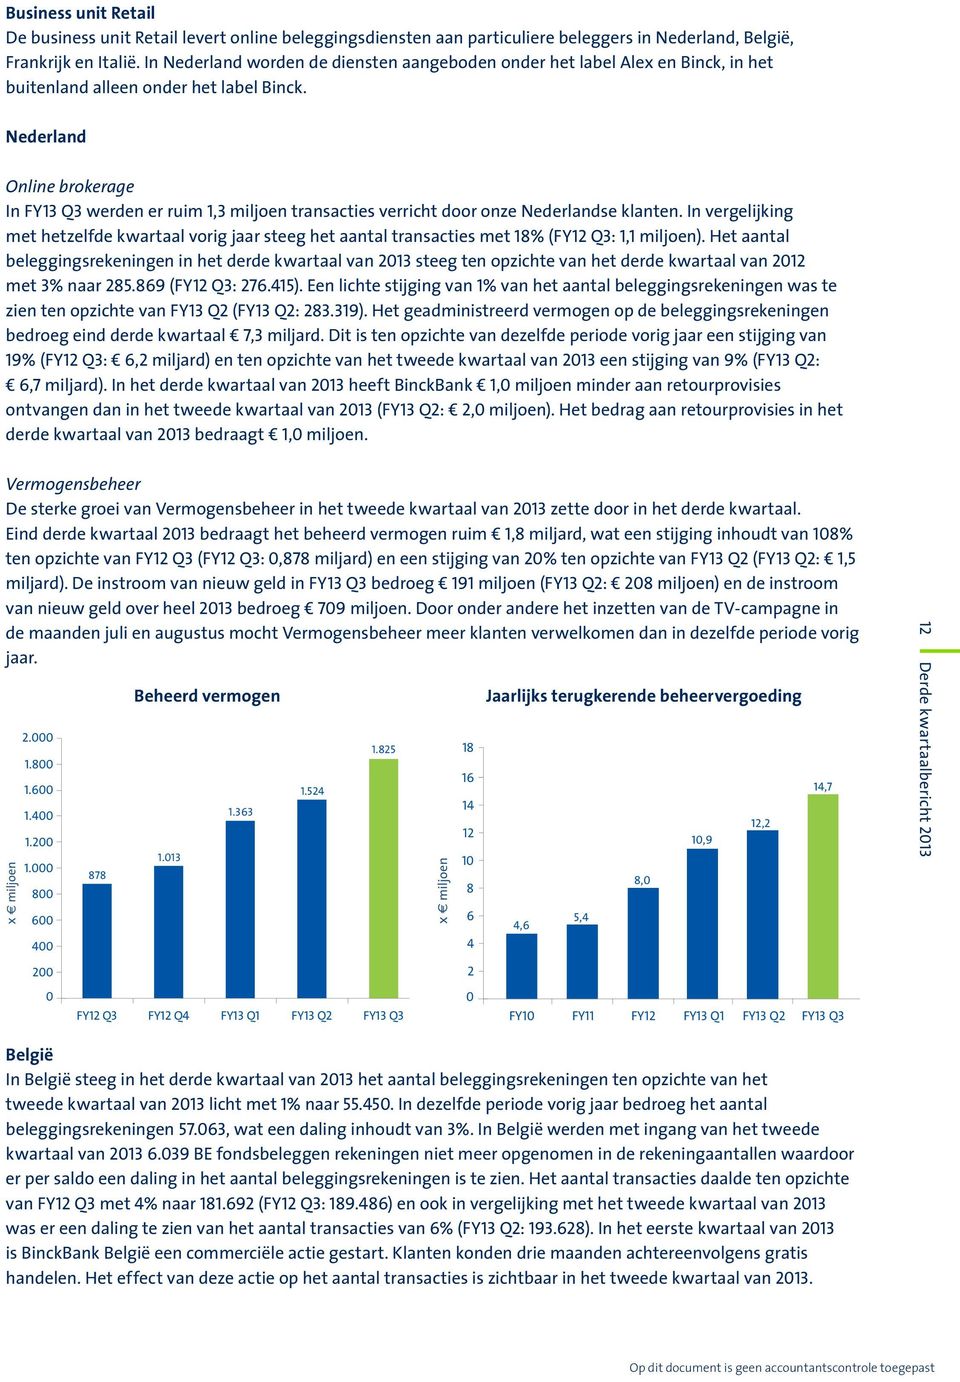 Nederland Online brokerage In FY13 Q3 werden er ruim 1,3 miljoen transacties verricht door onze Nederlandse klanten.